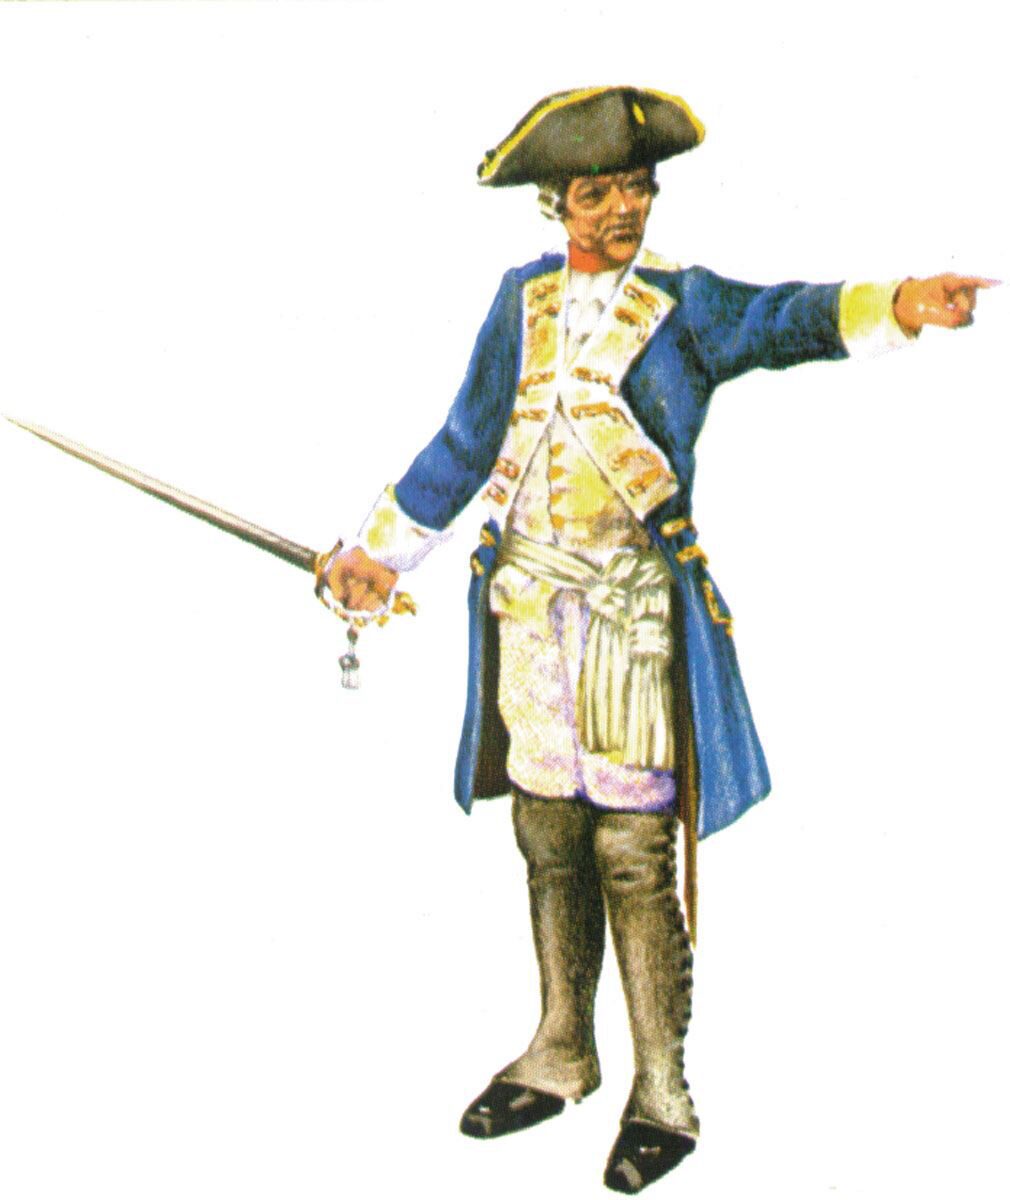 Prince August 403 Zinngiessform  Offizier Preussen 18. Jh.